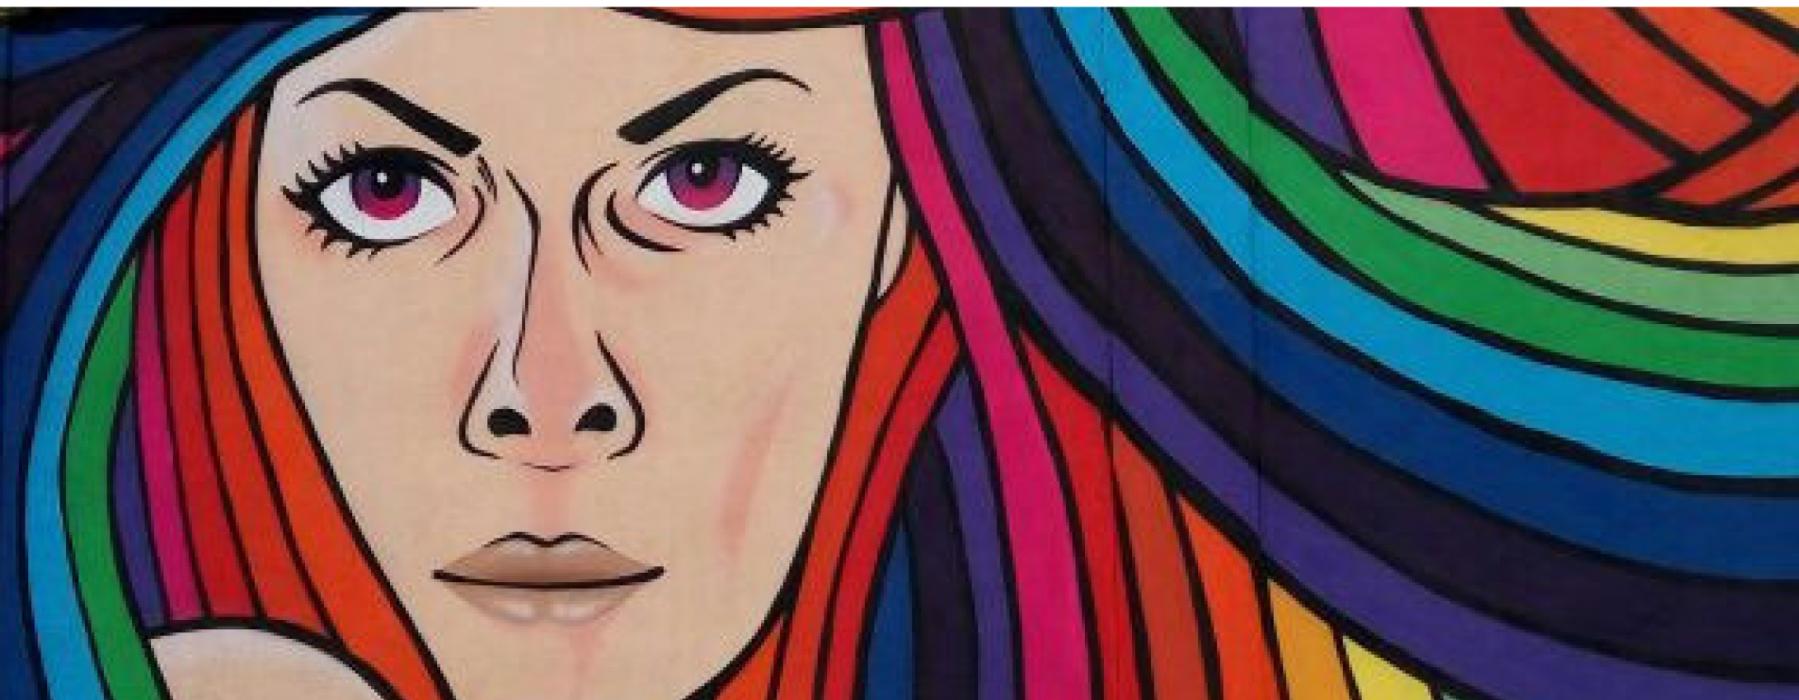 Murales con volto di donna con capelli dei colori dell'arcobaleno